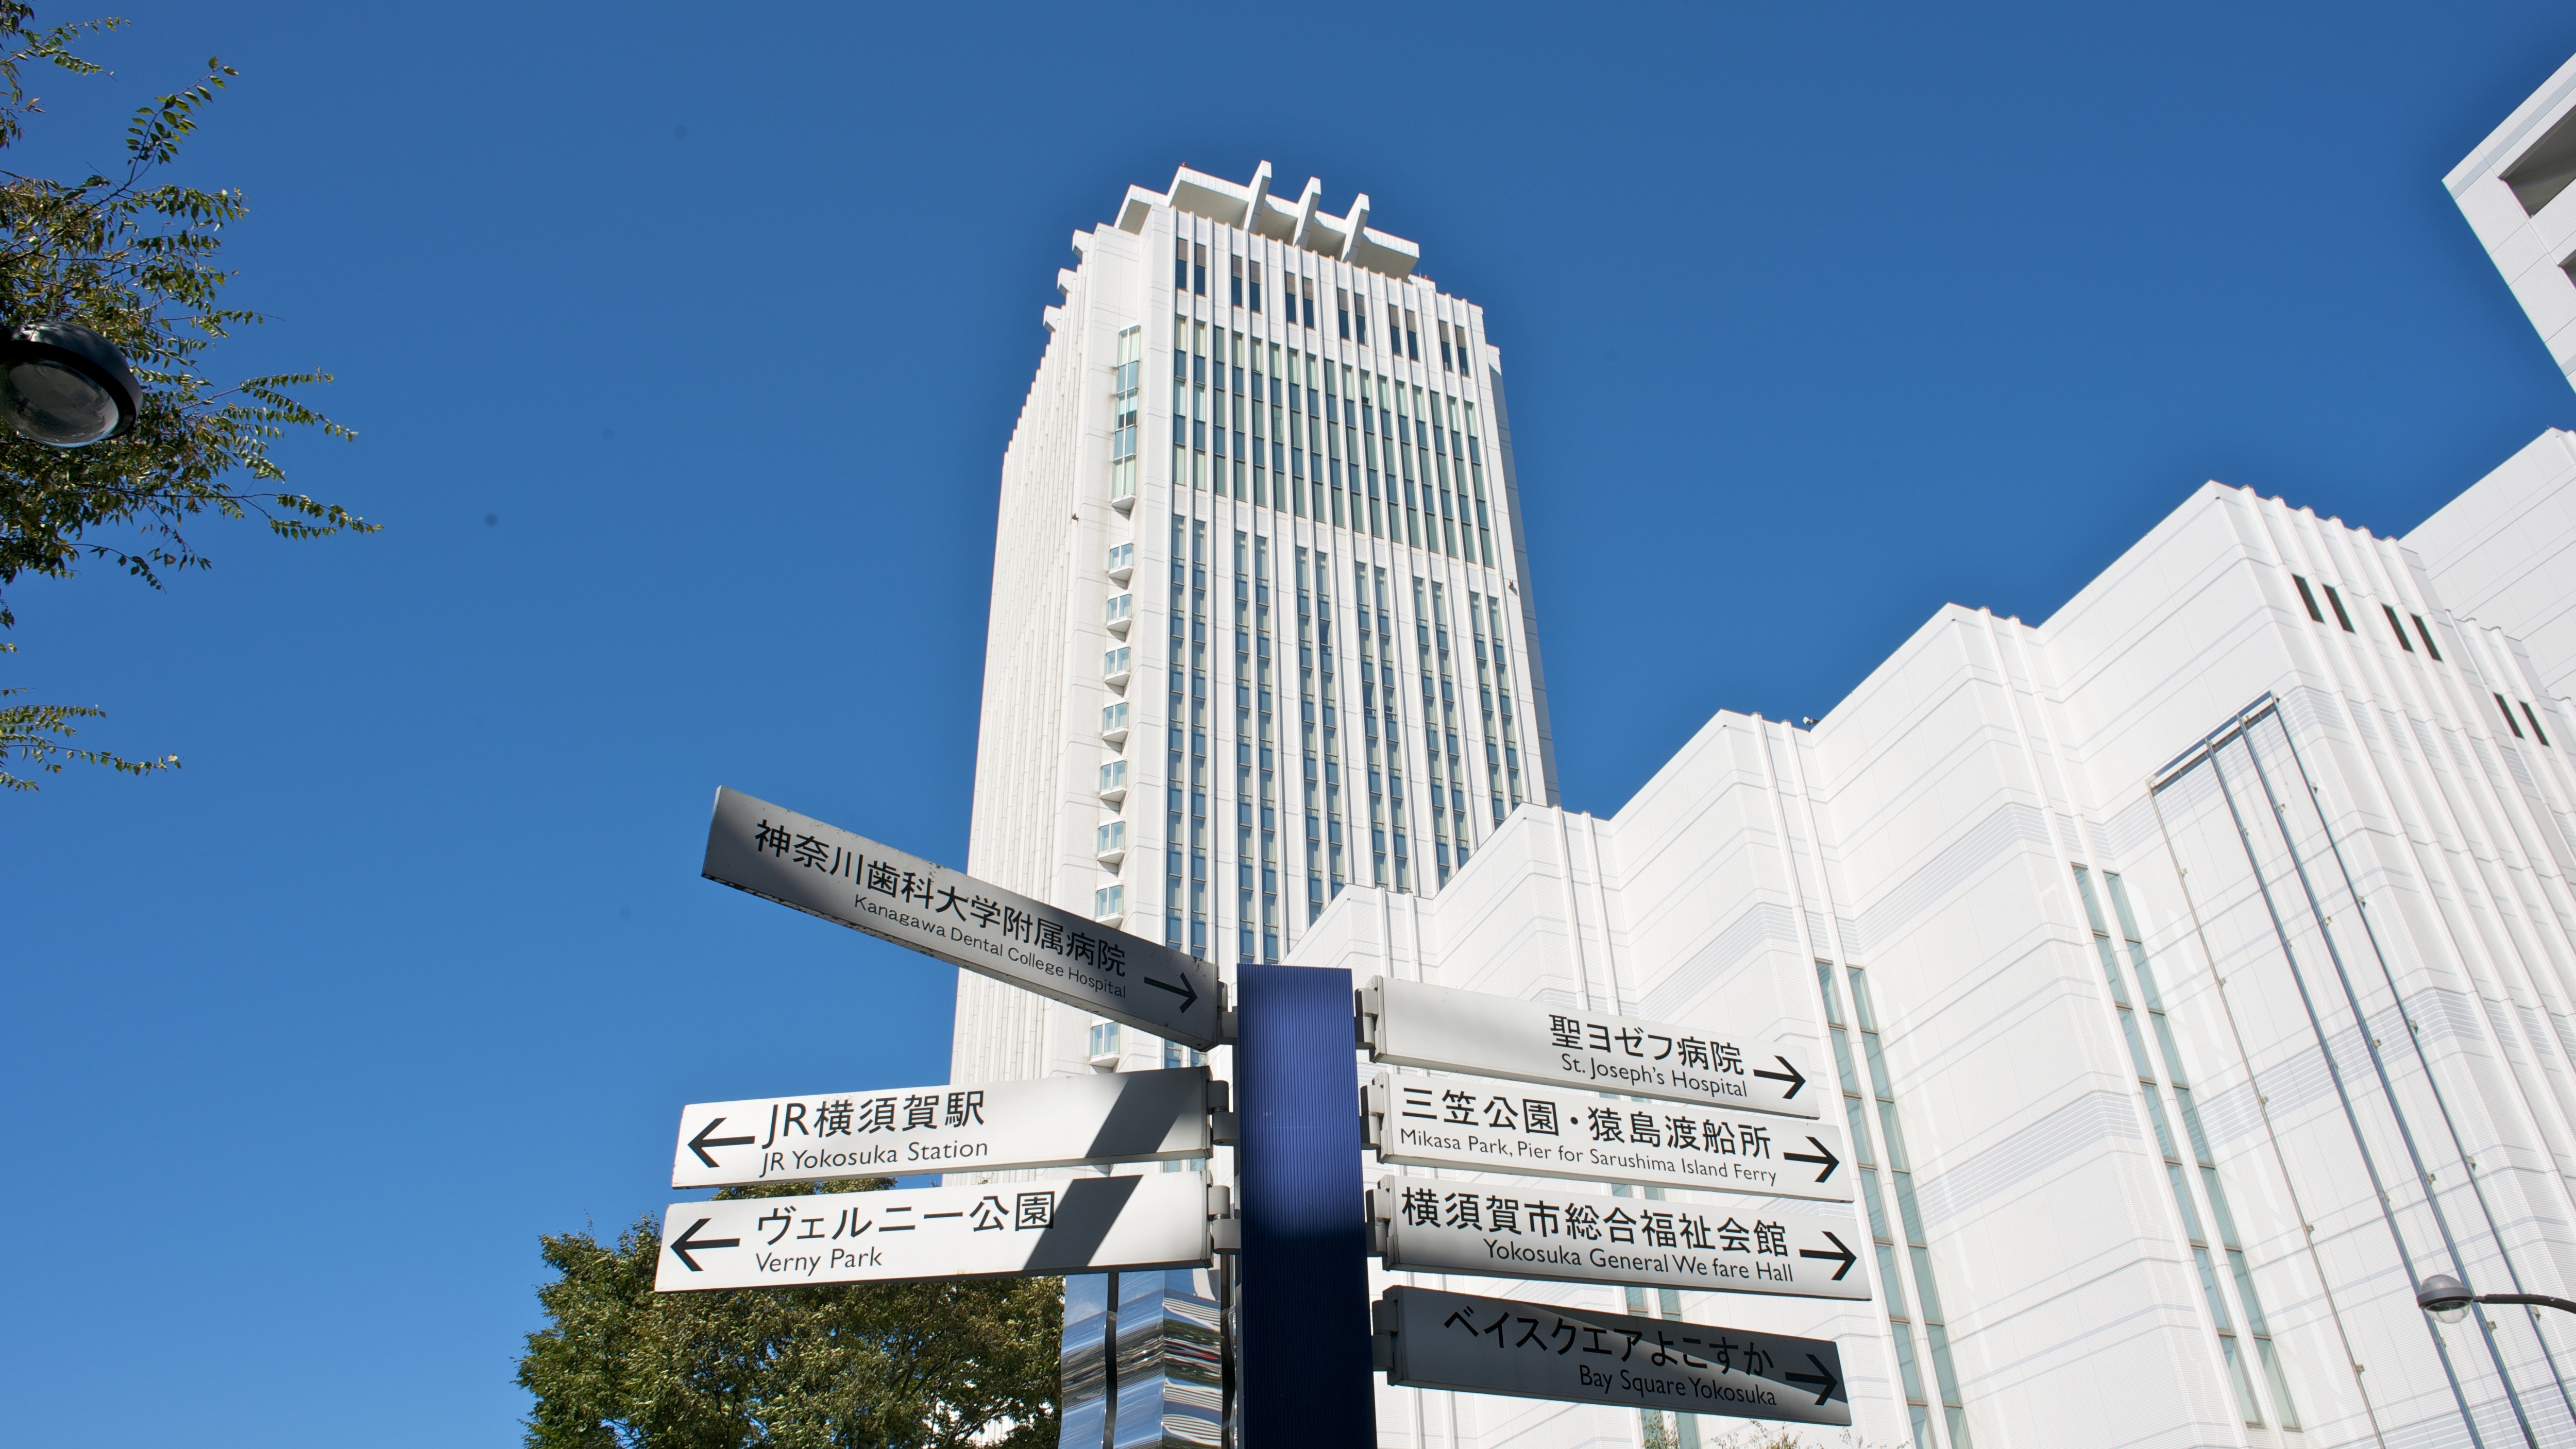 横須賀 三浦のホテル 旅館 宿泊予約 楽天トラベル